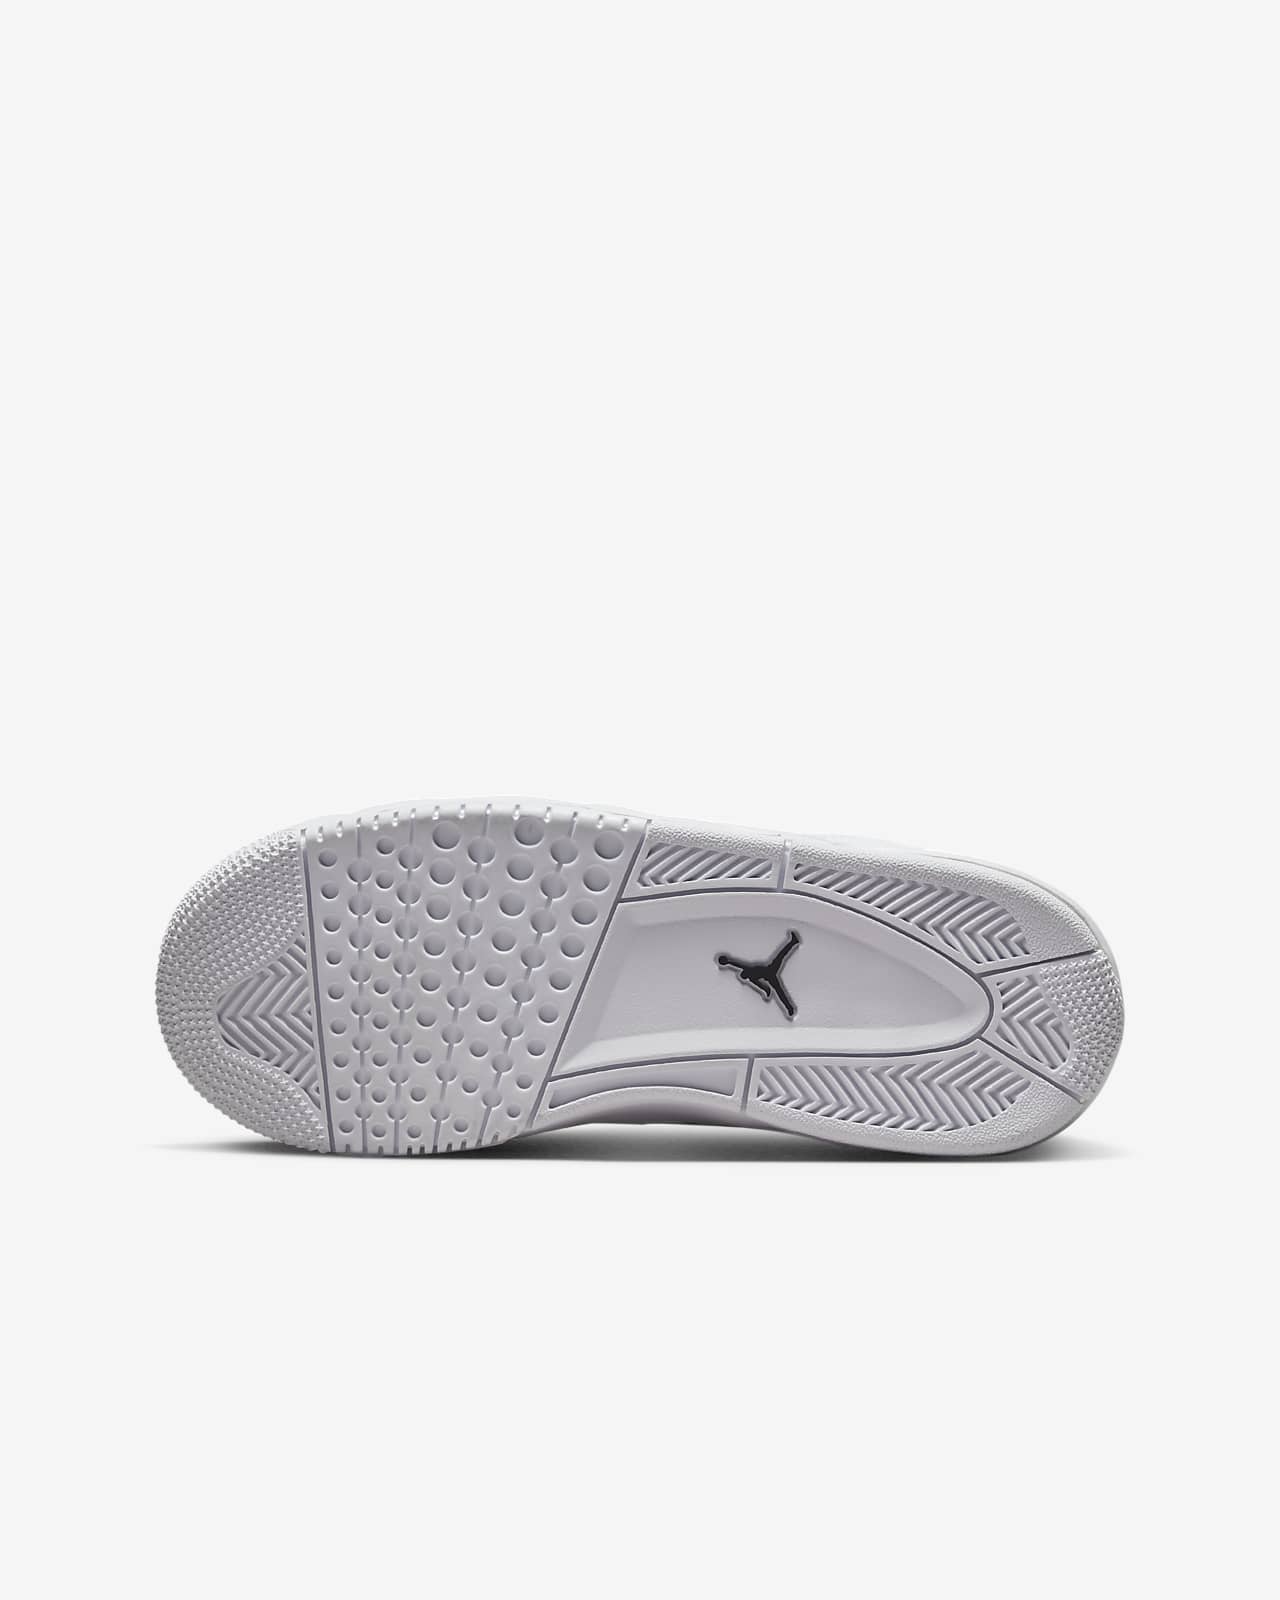 Jordan Flight Origin Zapatillas - Niño/a. Nike ES